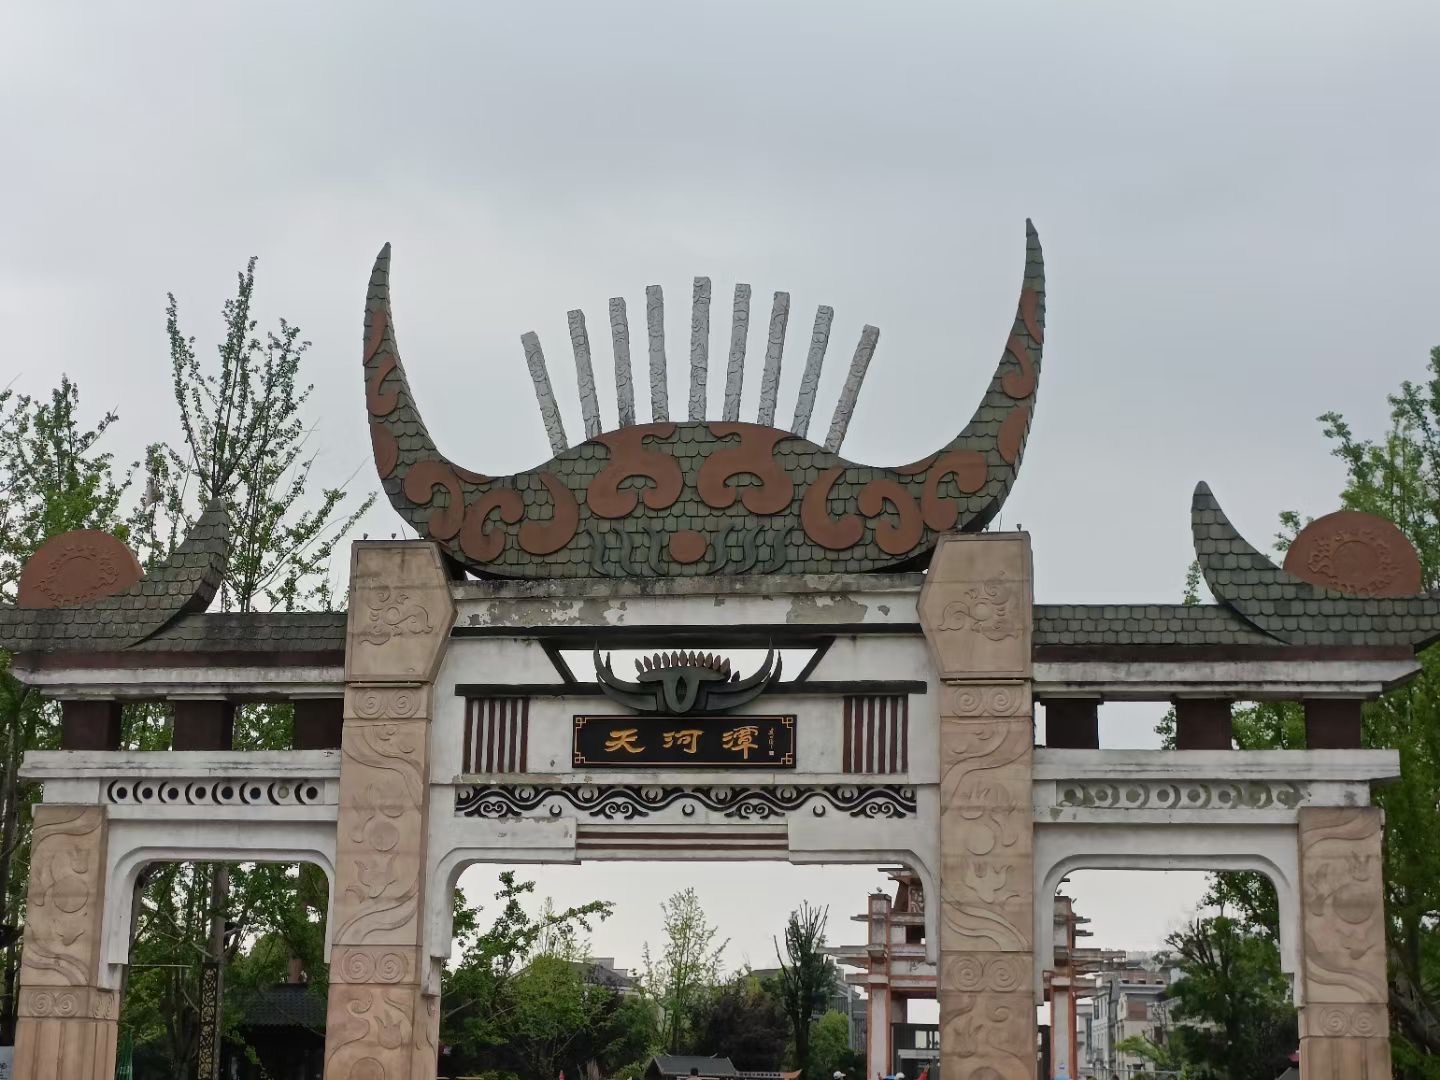 天河潭旅游度假区位于贵州省贵阳市花溪区石板镇，是以典型喀斯特自然风光为主、历史名人隐士文化为辅的风景